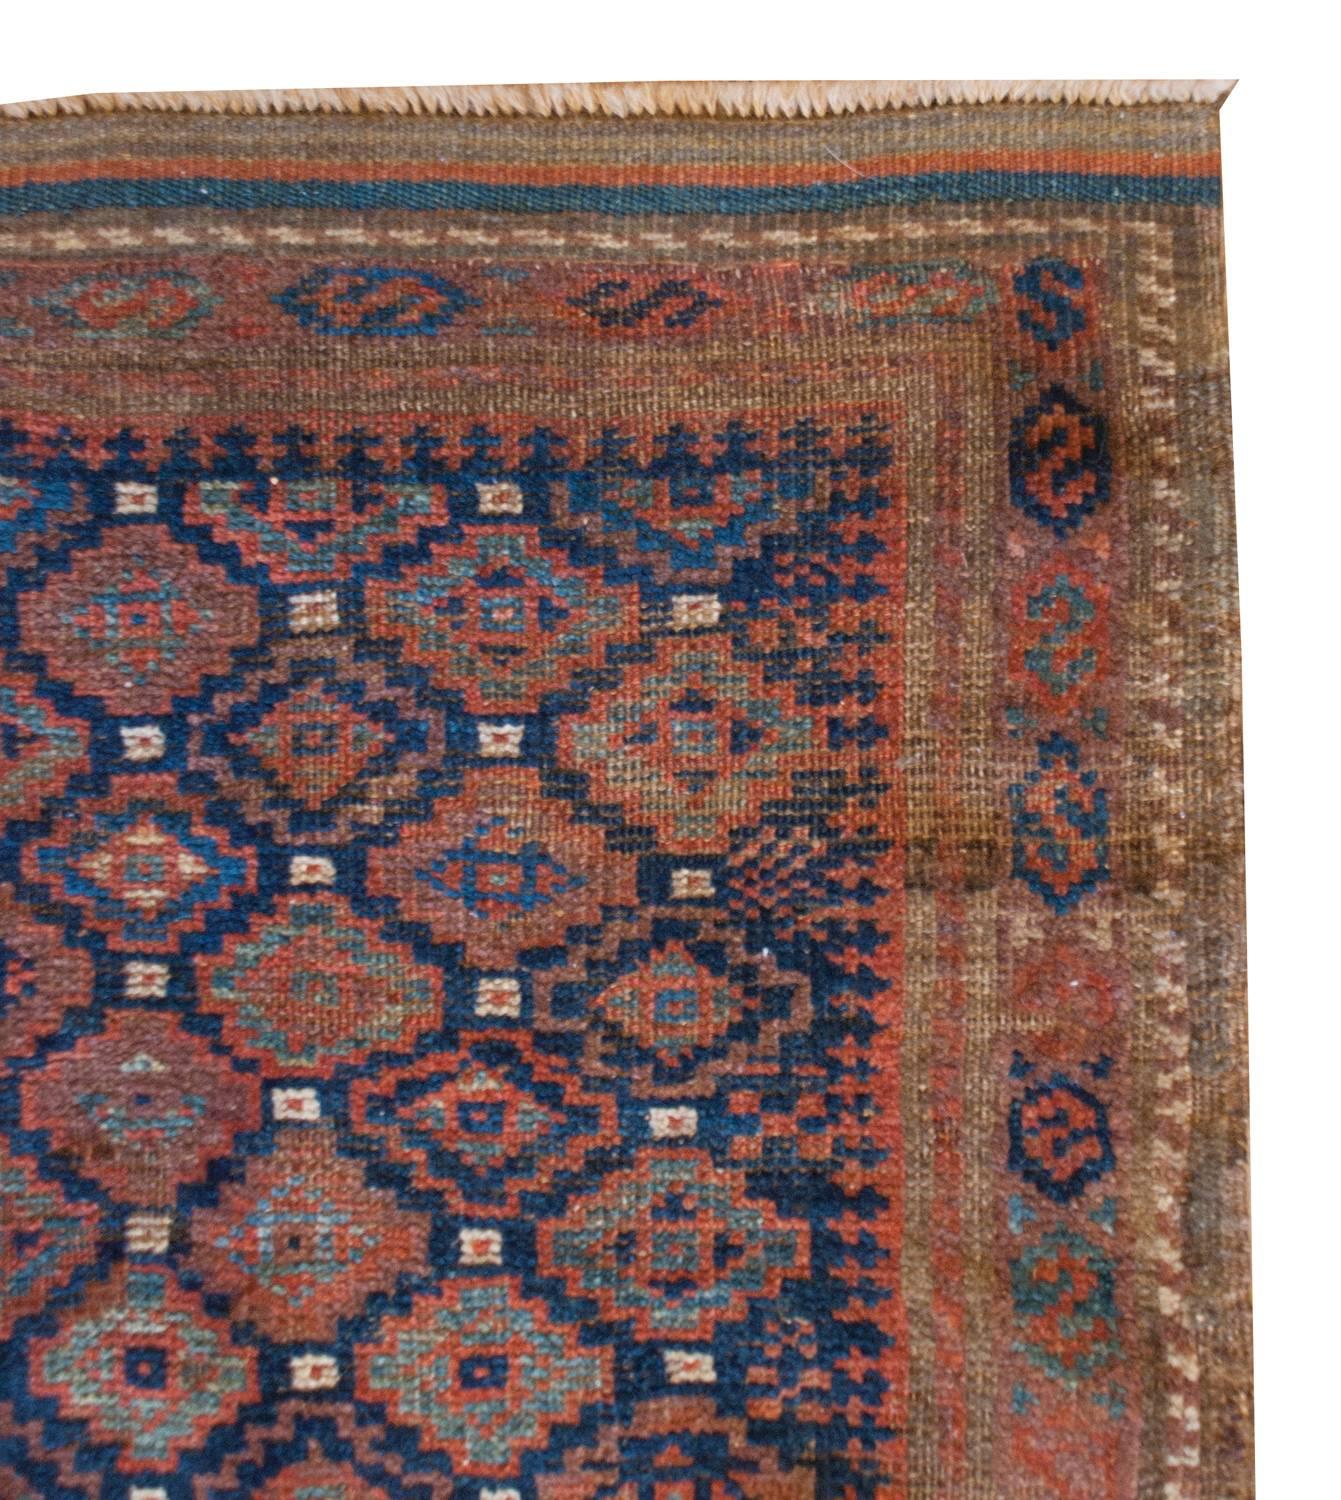 Ein besonderer, zierlicher persischer Belutsch-Teppich aus dem späten 19. Jahrhundert mit einem ganzflächigen, kleinteiligen Rautenmuster, das mit hell- und dunkelindigo- und karminrot gefärbter Wolle gewebt wurde. Die Umrandung ist wunderschön, mit